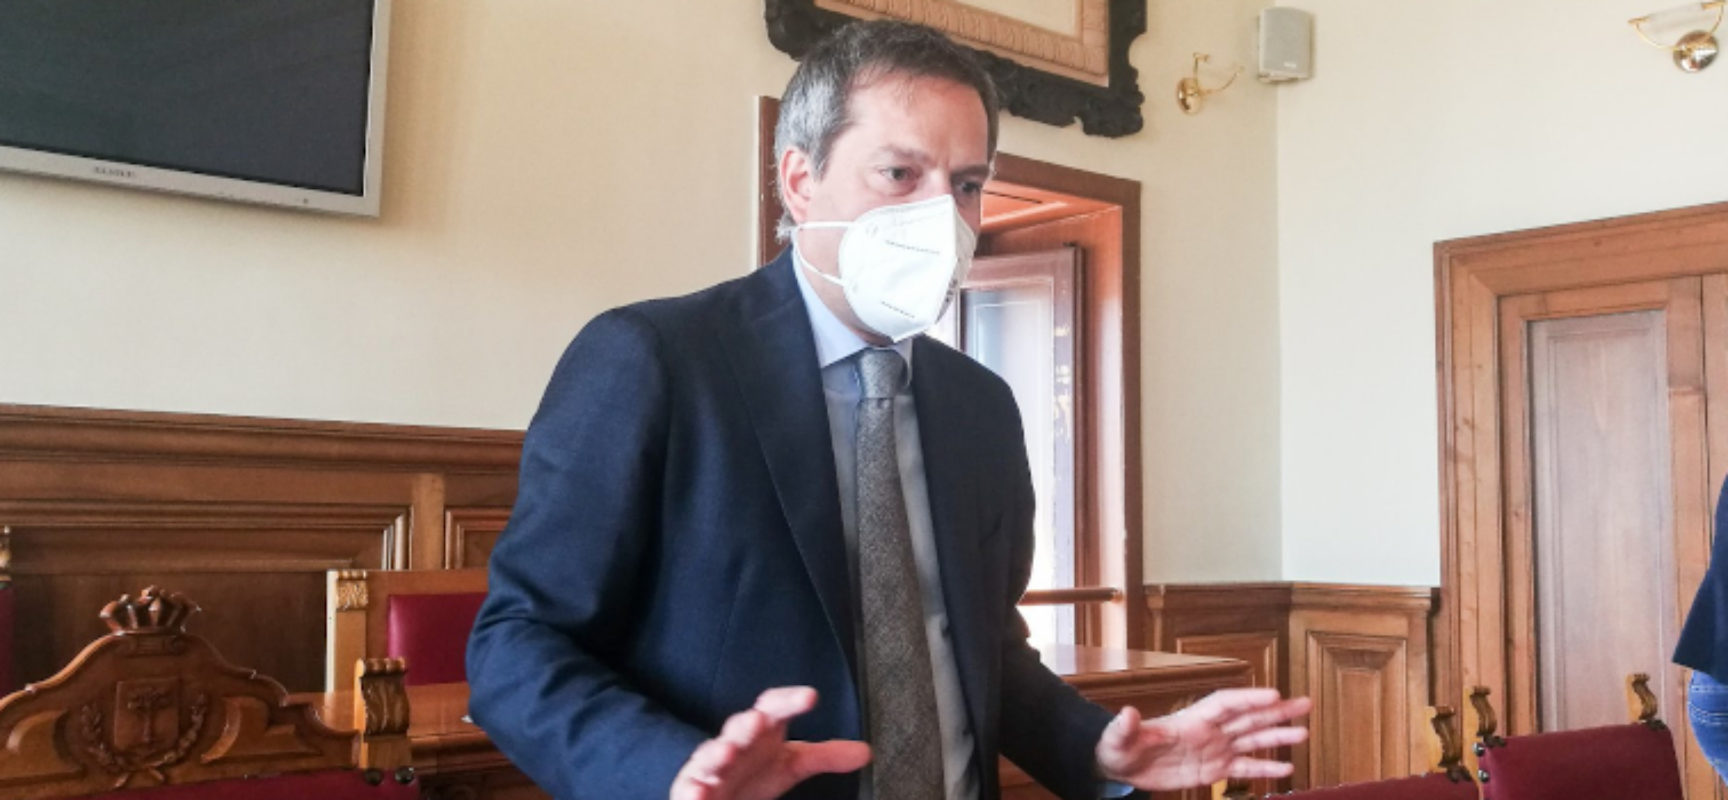 Stop Tar Puglia su ricorso opposizione per DUP, Angarano: “Crolla il castello di mistificazioni”